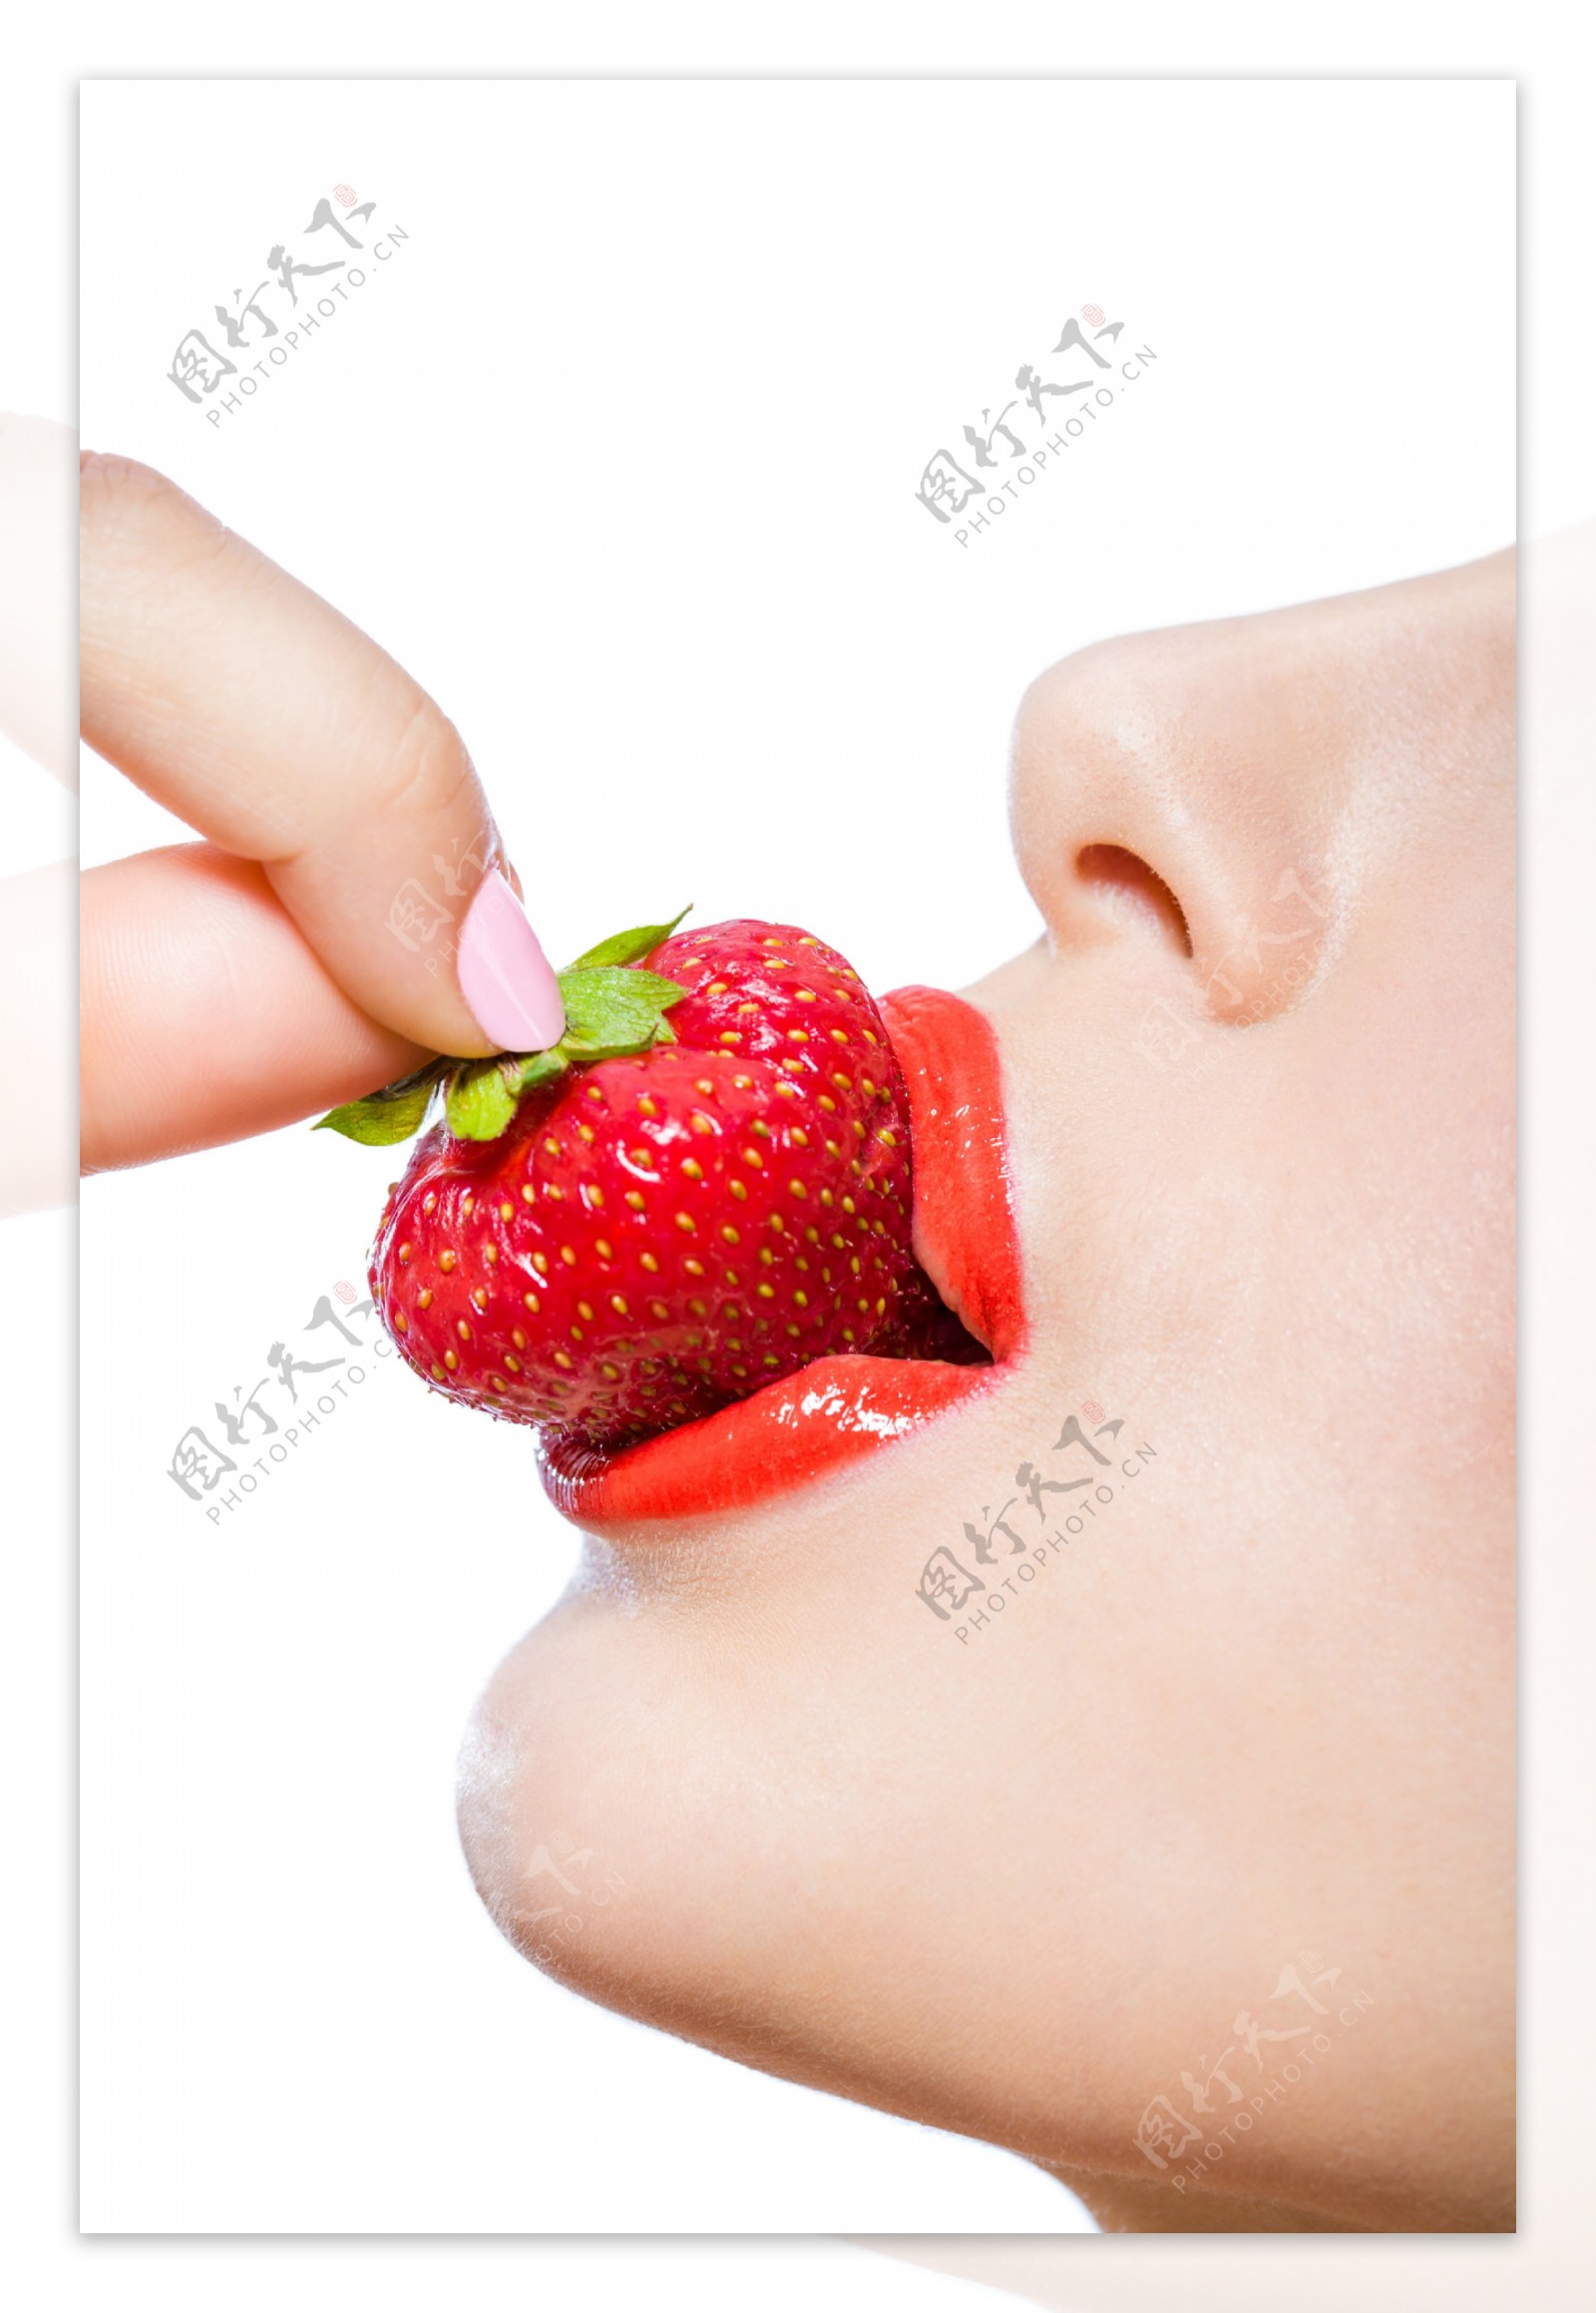 吃草莓的红唇美女图片